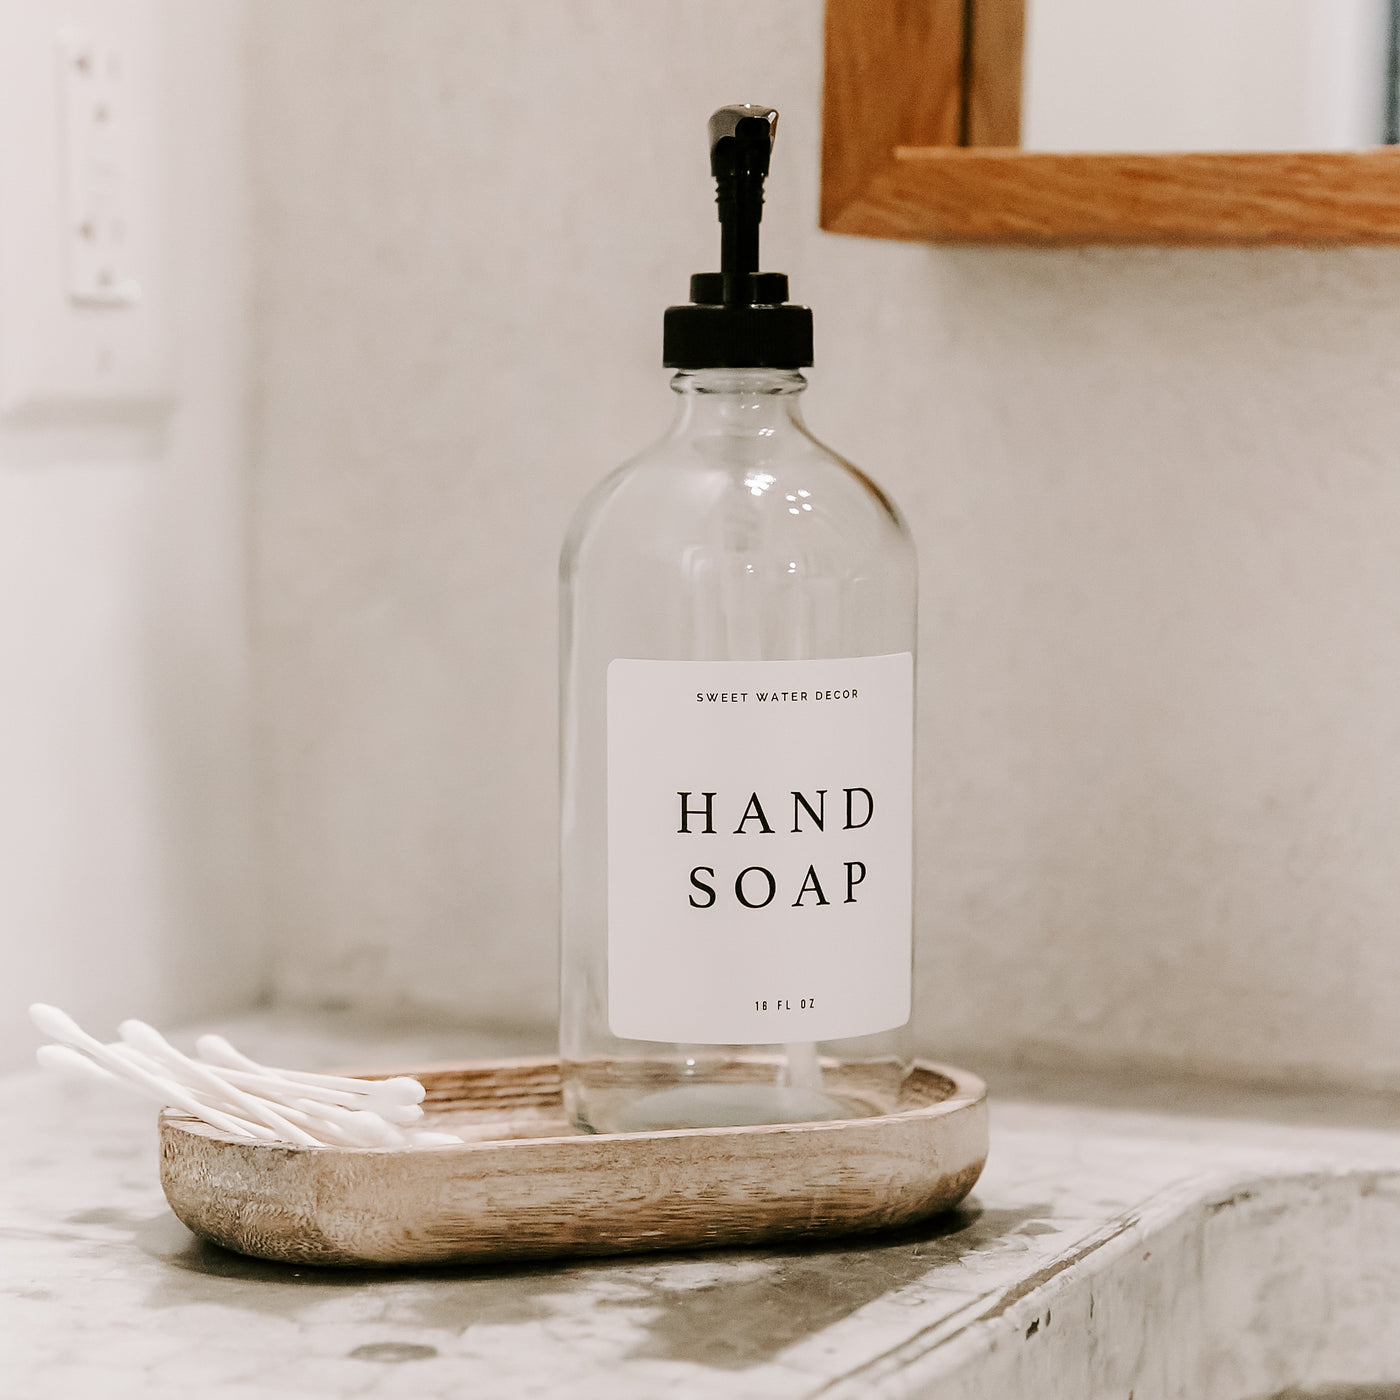 16oz Glass Dish & Hand Soap Dispenser - White Label